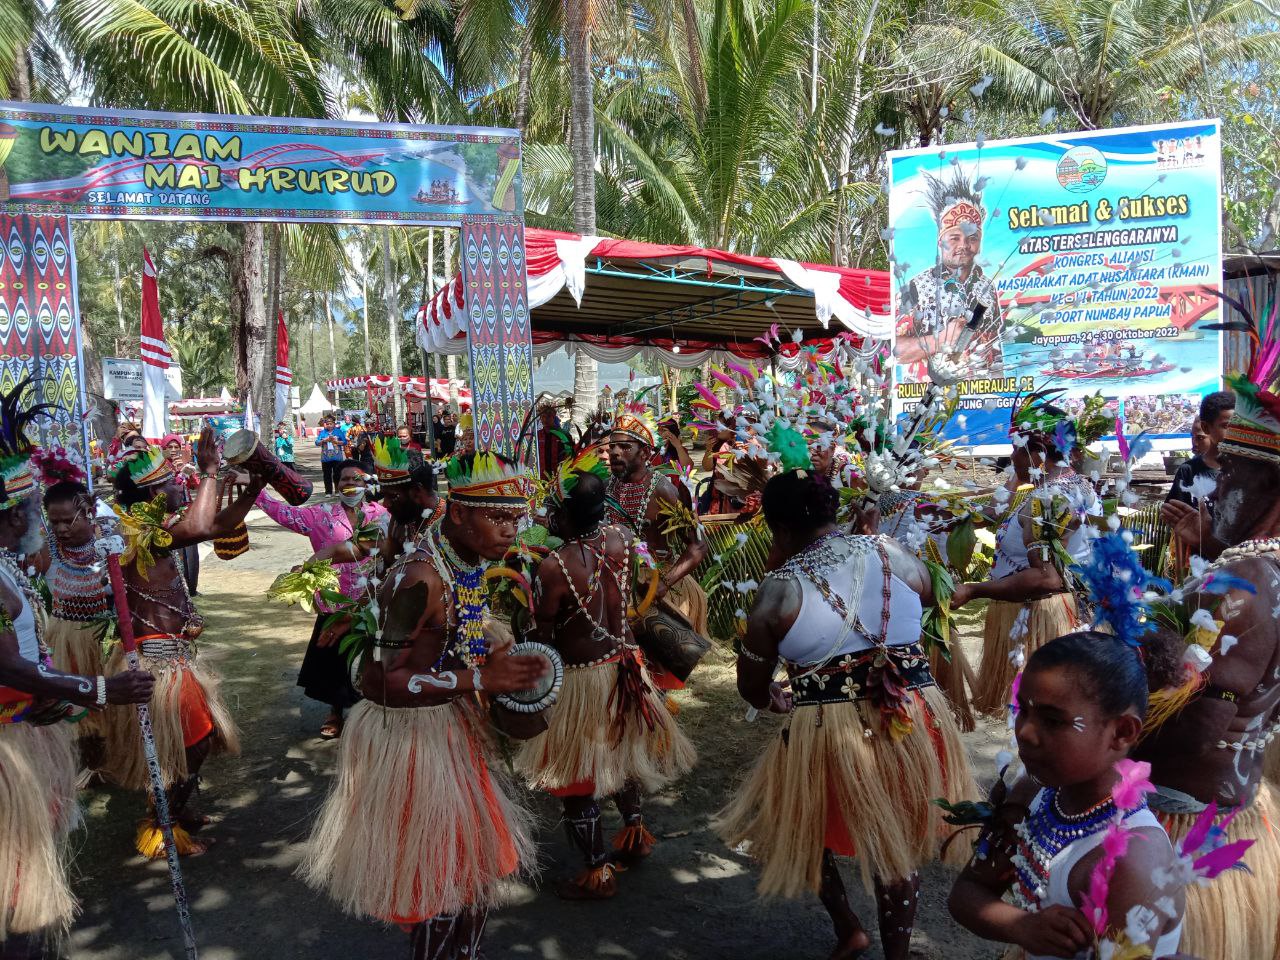 Indigenous Papuans